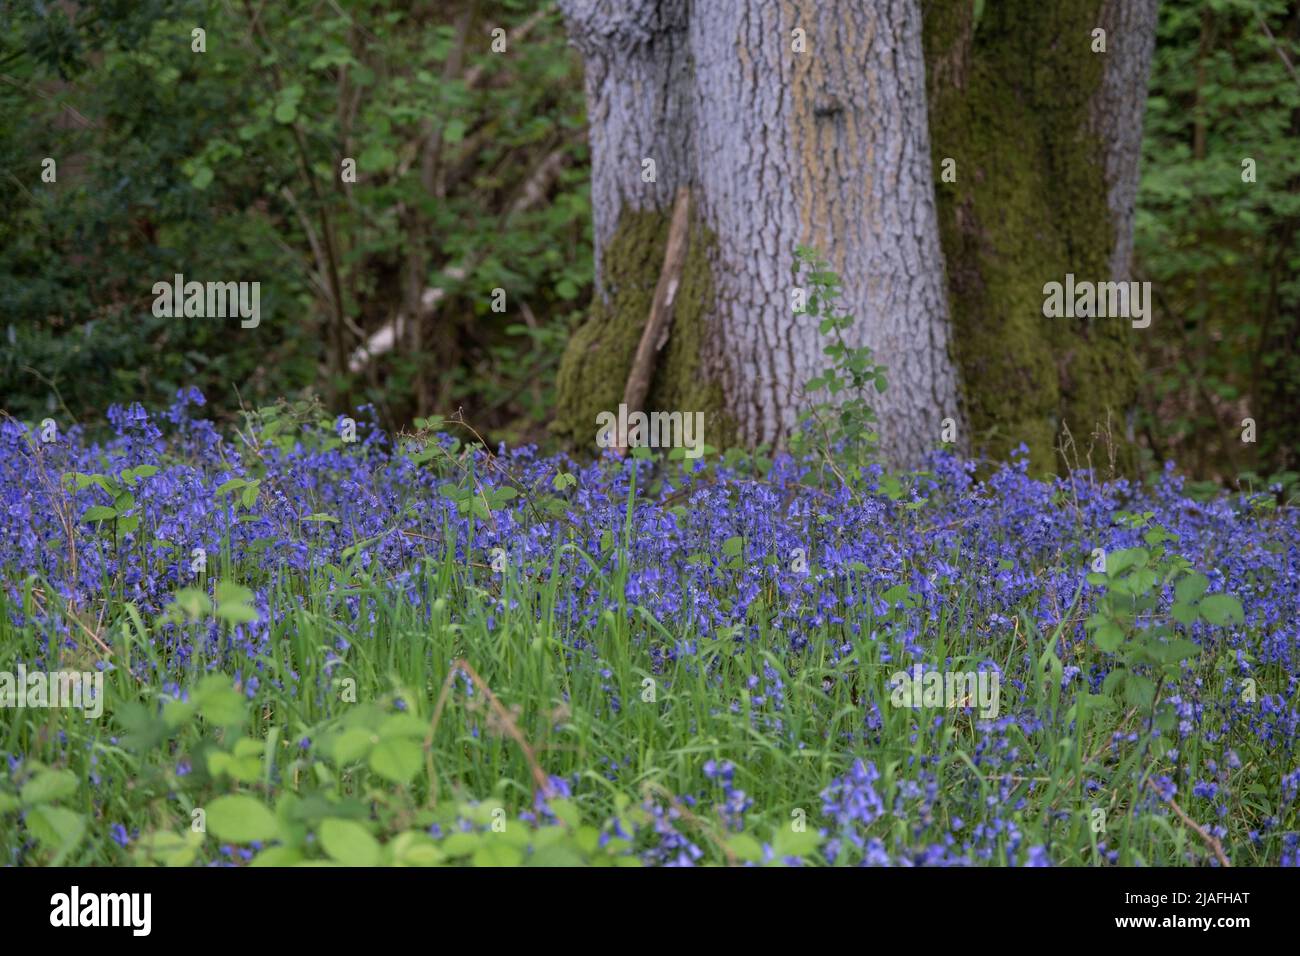 Bluebells en bosques de primavera el 14th de mayo de 2022 en Upper Arley, Reino Unido. Los bluebells o H. non-scripta se asocian particularmente con bosques antiguos donde puede dominar el suelo del bosque para producir alfombras de flores violeta-azules en bosques de bluebell, pero también ocurre en hábitats más abiertos en regiones occidentales. Está protegido por la legislación del Reino Unido. Bannams Wood es un pequeño pedazo de bosque antiguo, parte del Wildwood original que cubría el Reino Unido hace muchos miles de años. British wildwood, o simplemente The wildwood, es el paisaje totalmente natural que se desarrolló en las principales partes de Inglaterra af Foto de stock